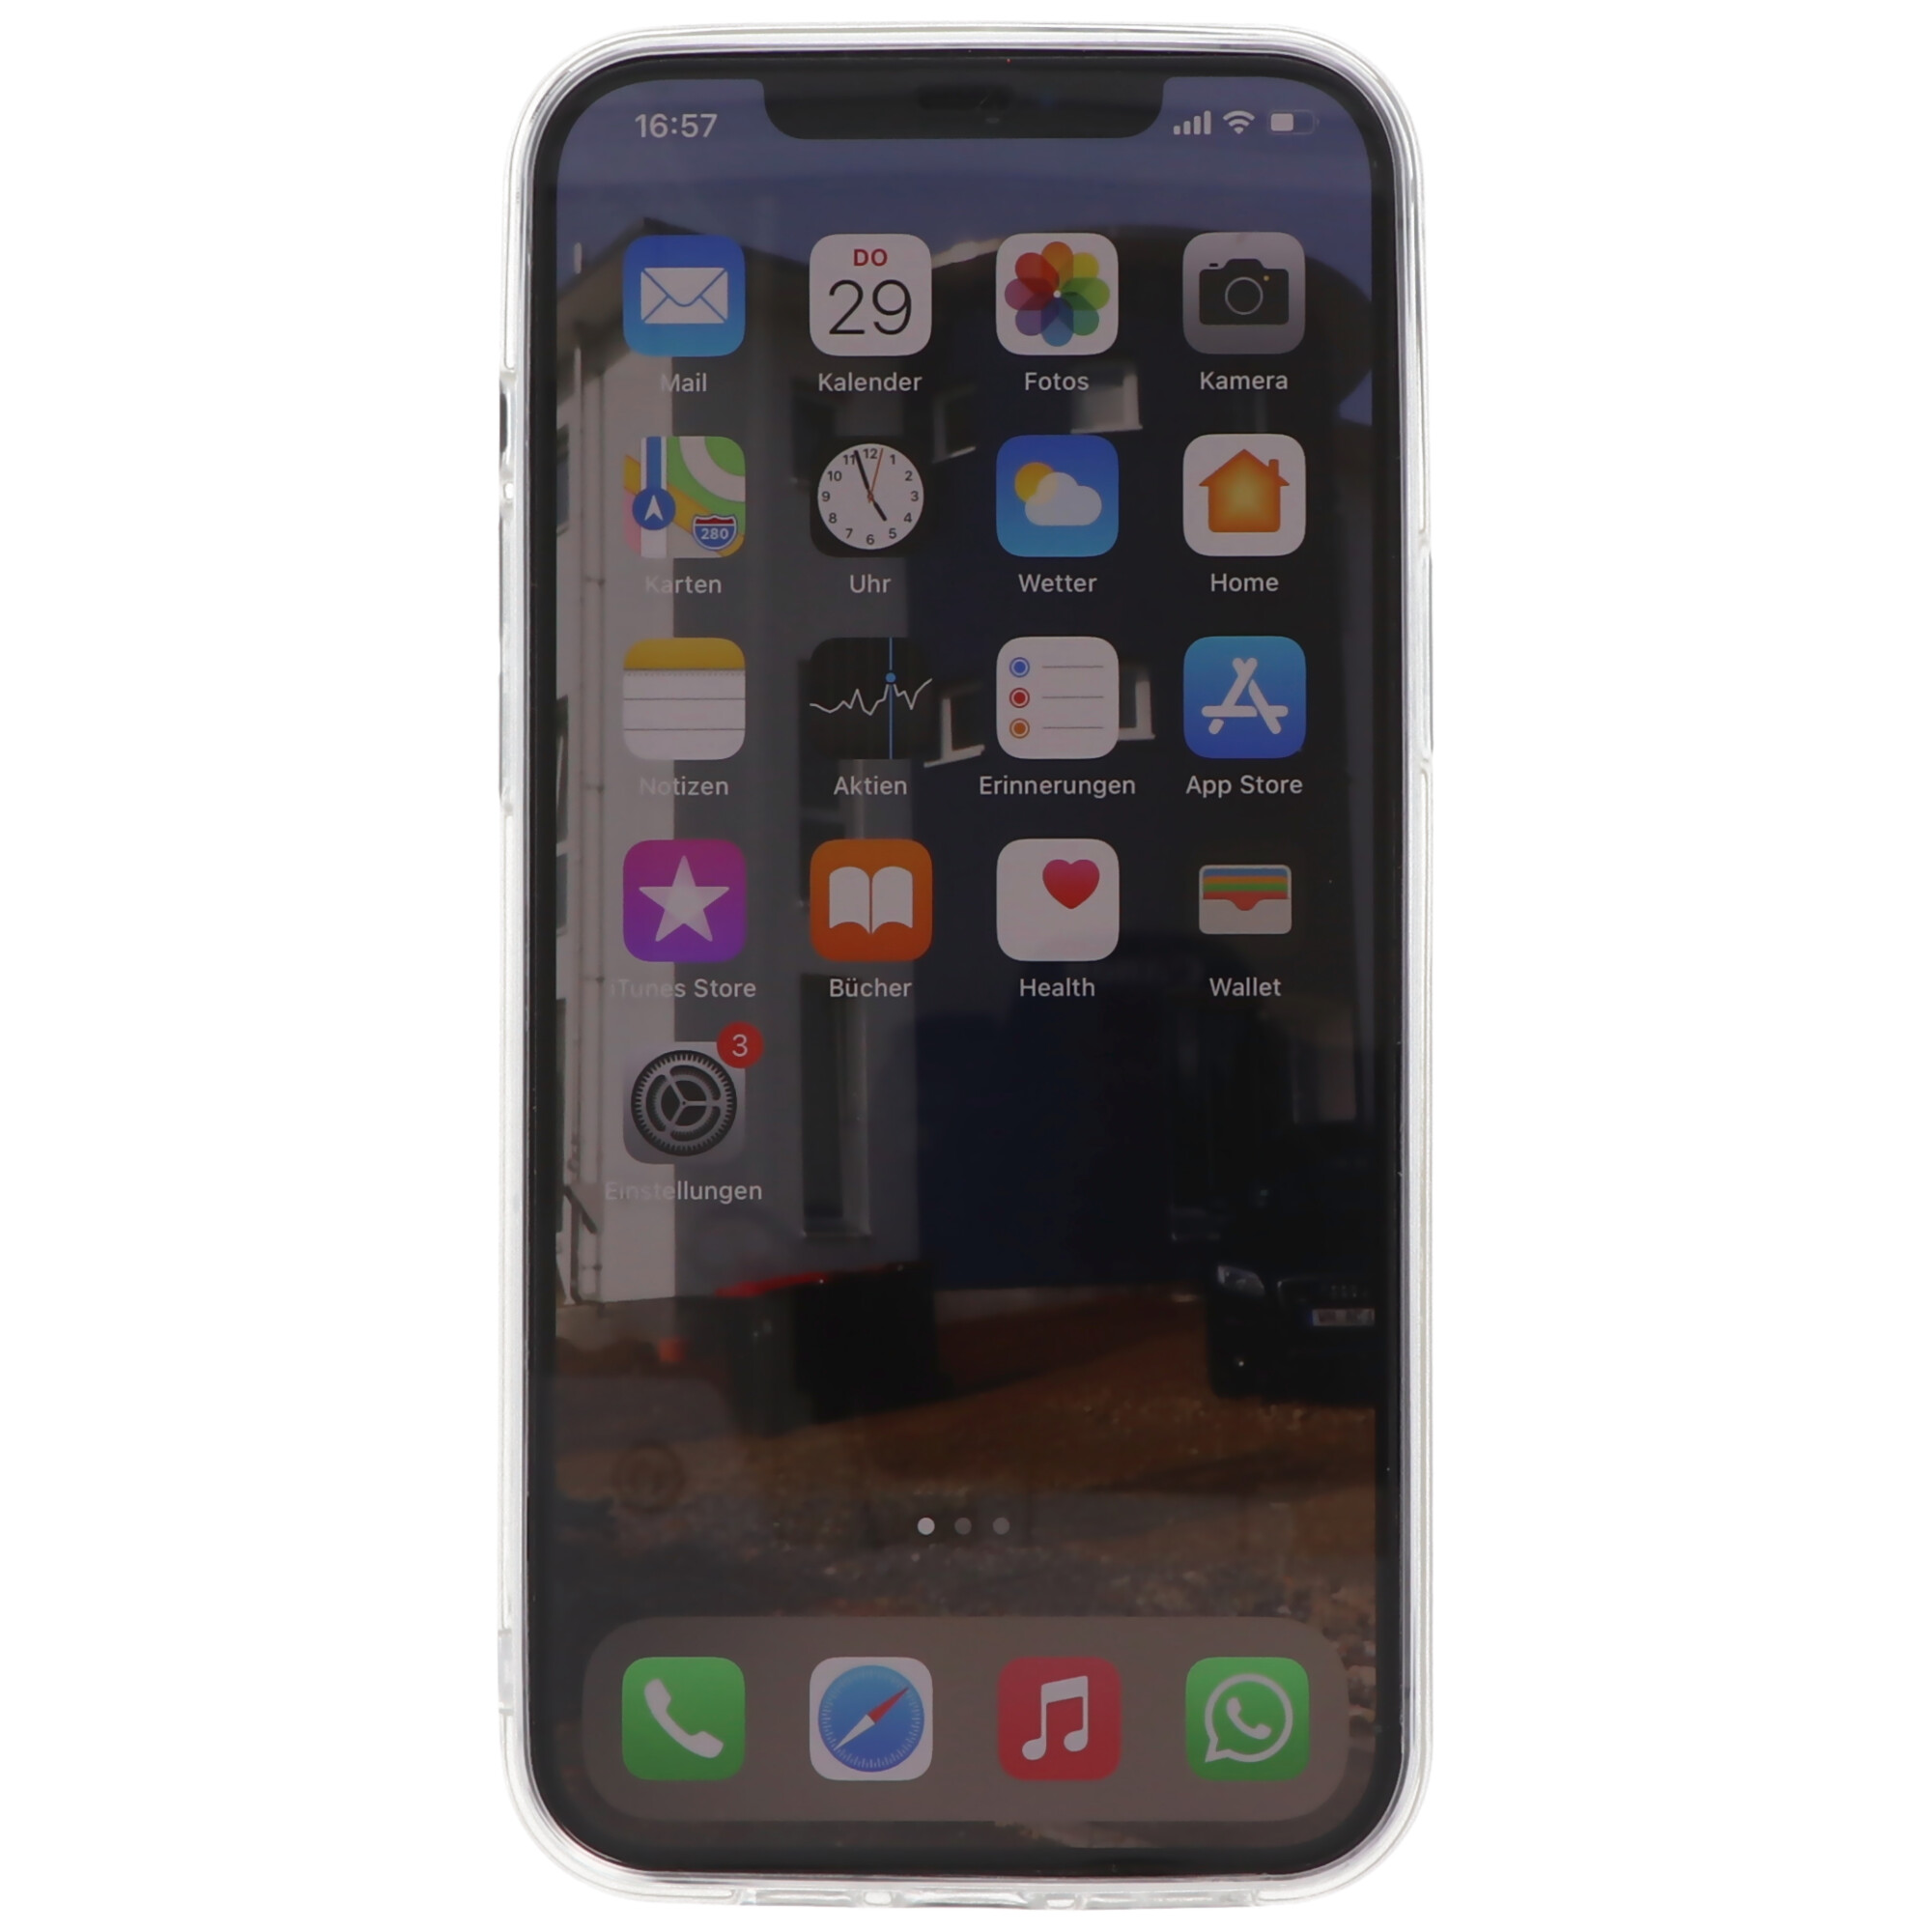 Hülle passend für Apple iPhone 12 Pro Max - transparente Schutzhülle, Anti-Gelb Luftkissen Fallschutz Silikon Handyhülle robustes TPU Case